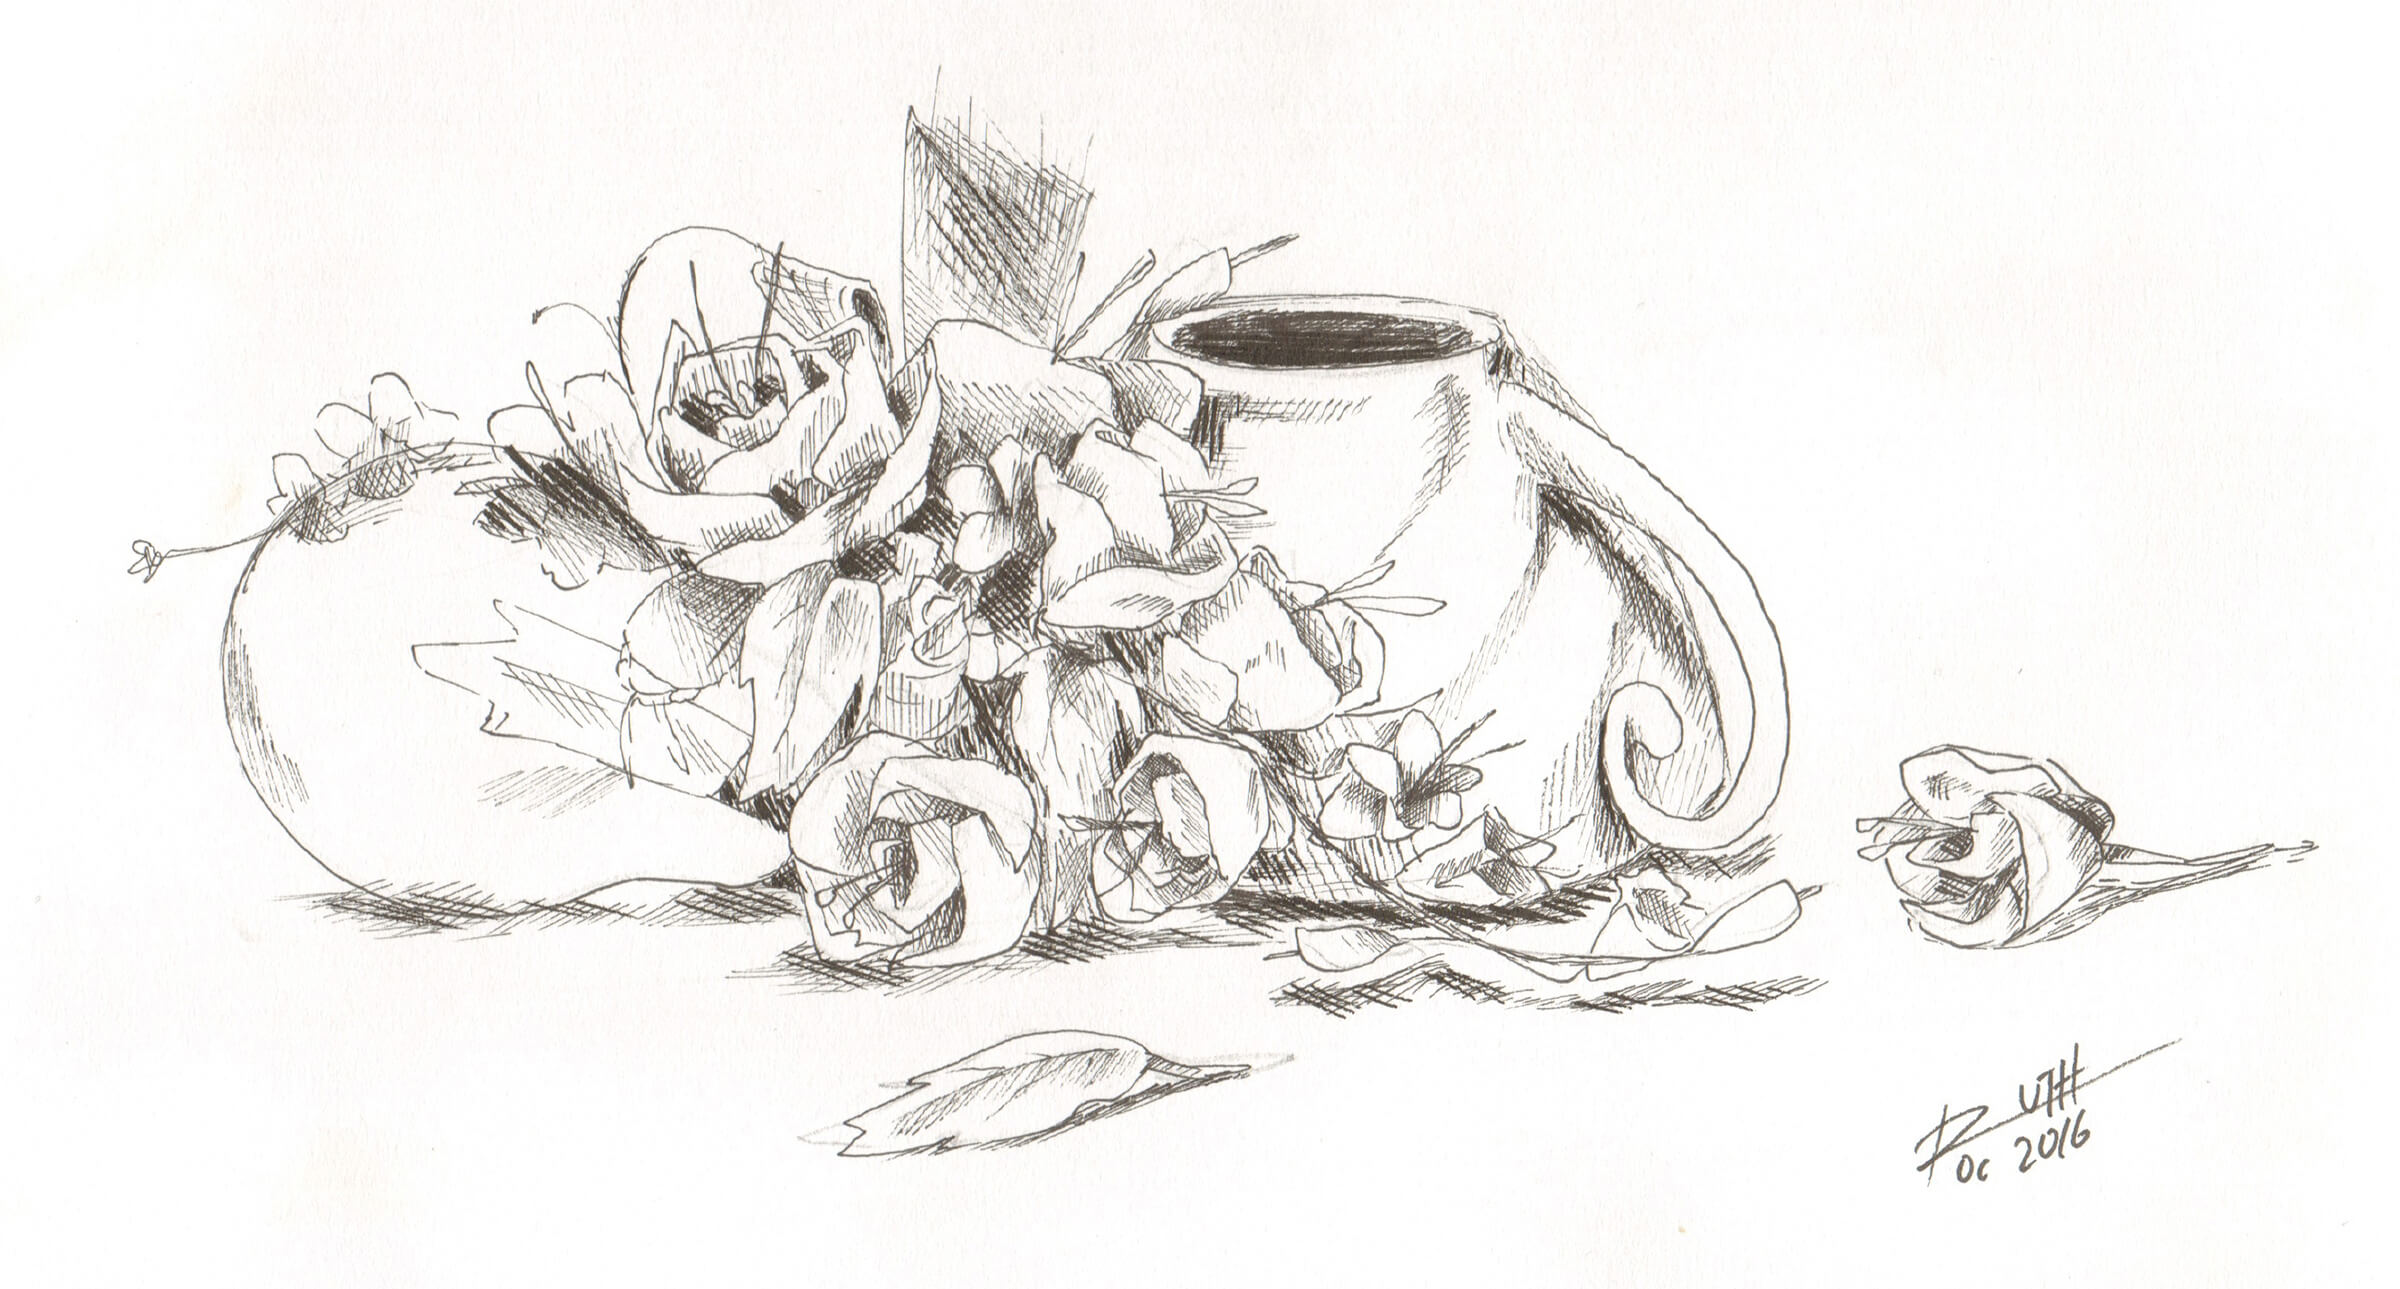 Bodegón, boceto en blanco y negro de una taza volcada, una bombilla y unas flores.